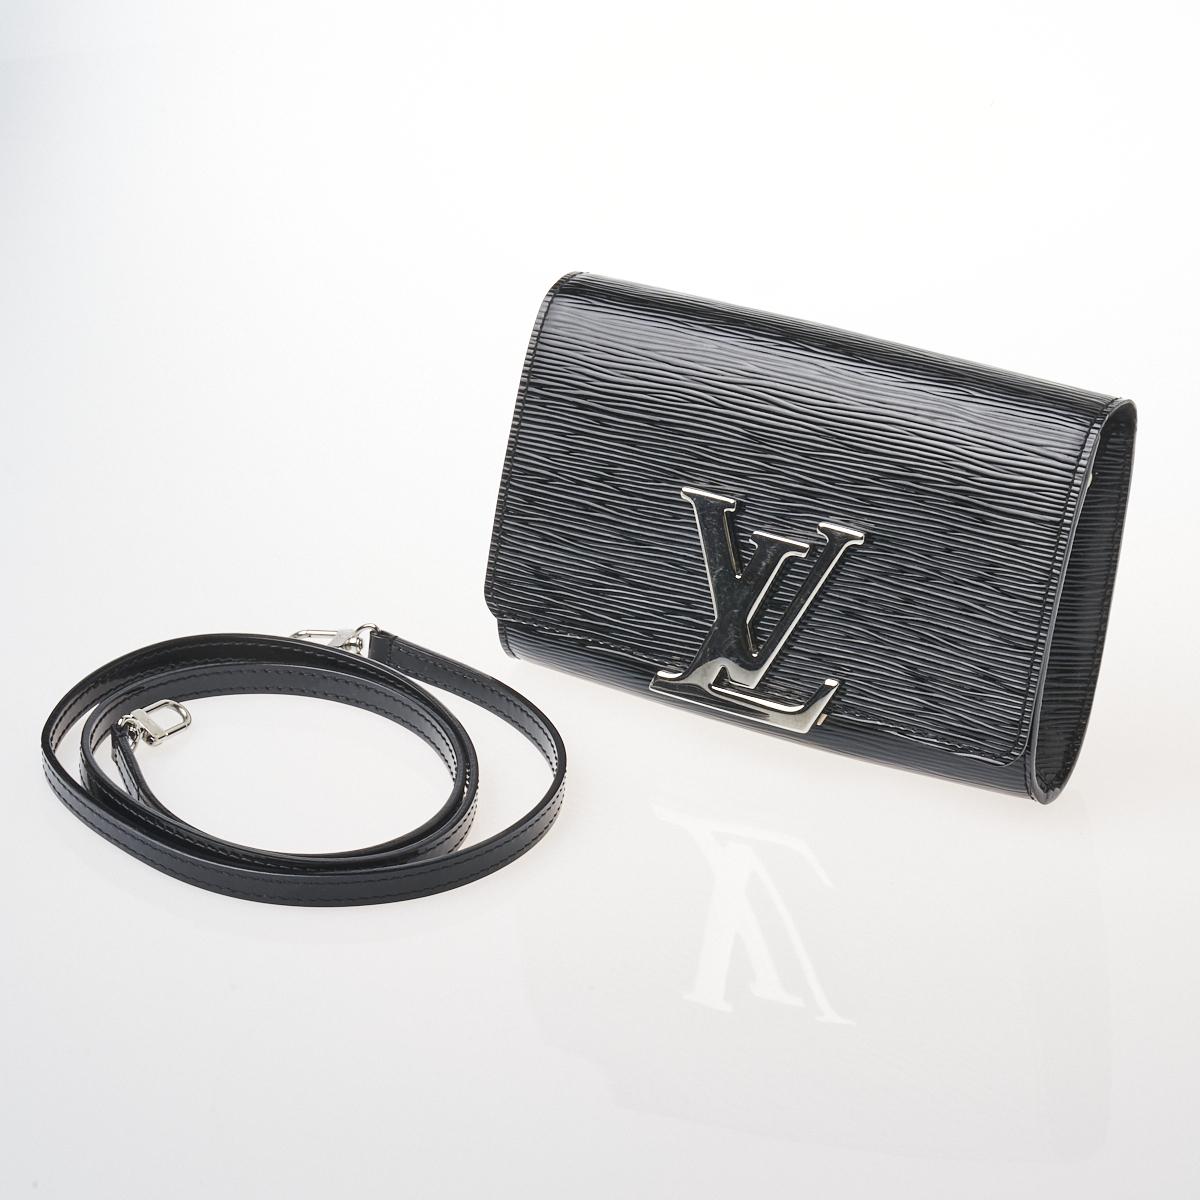 Louis Vuitton Black Epi Leather Louise Strap Pm Bag Auction